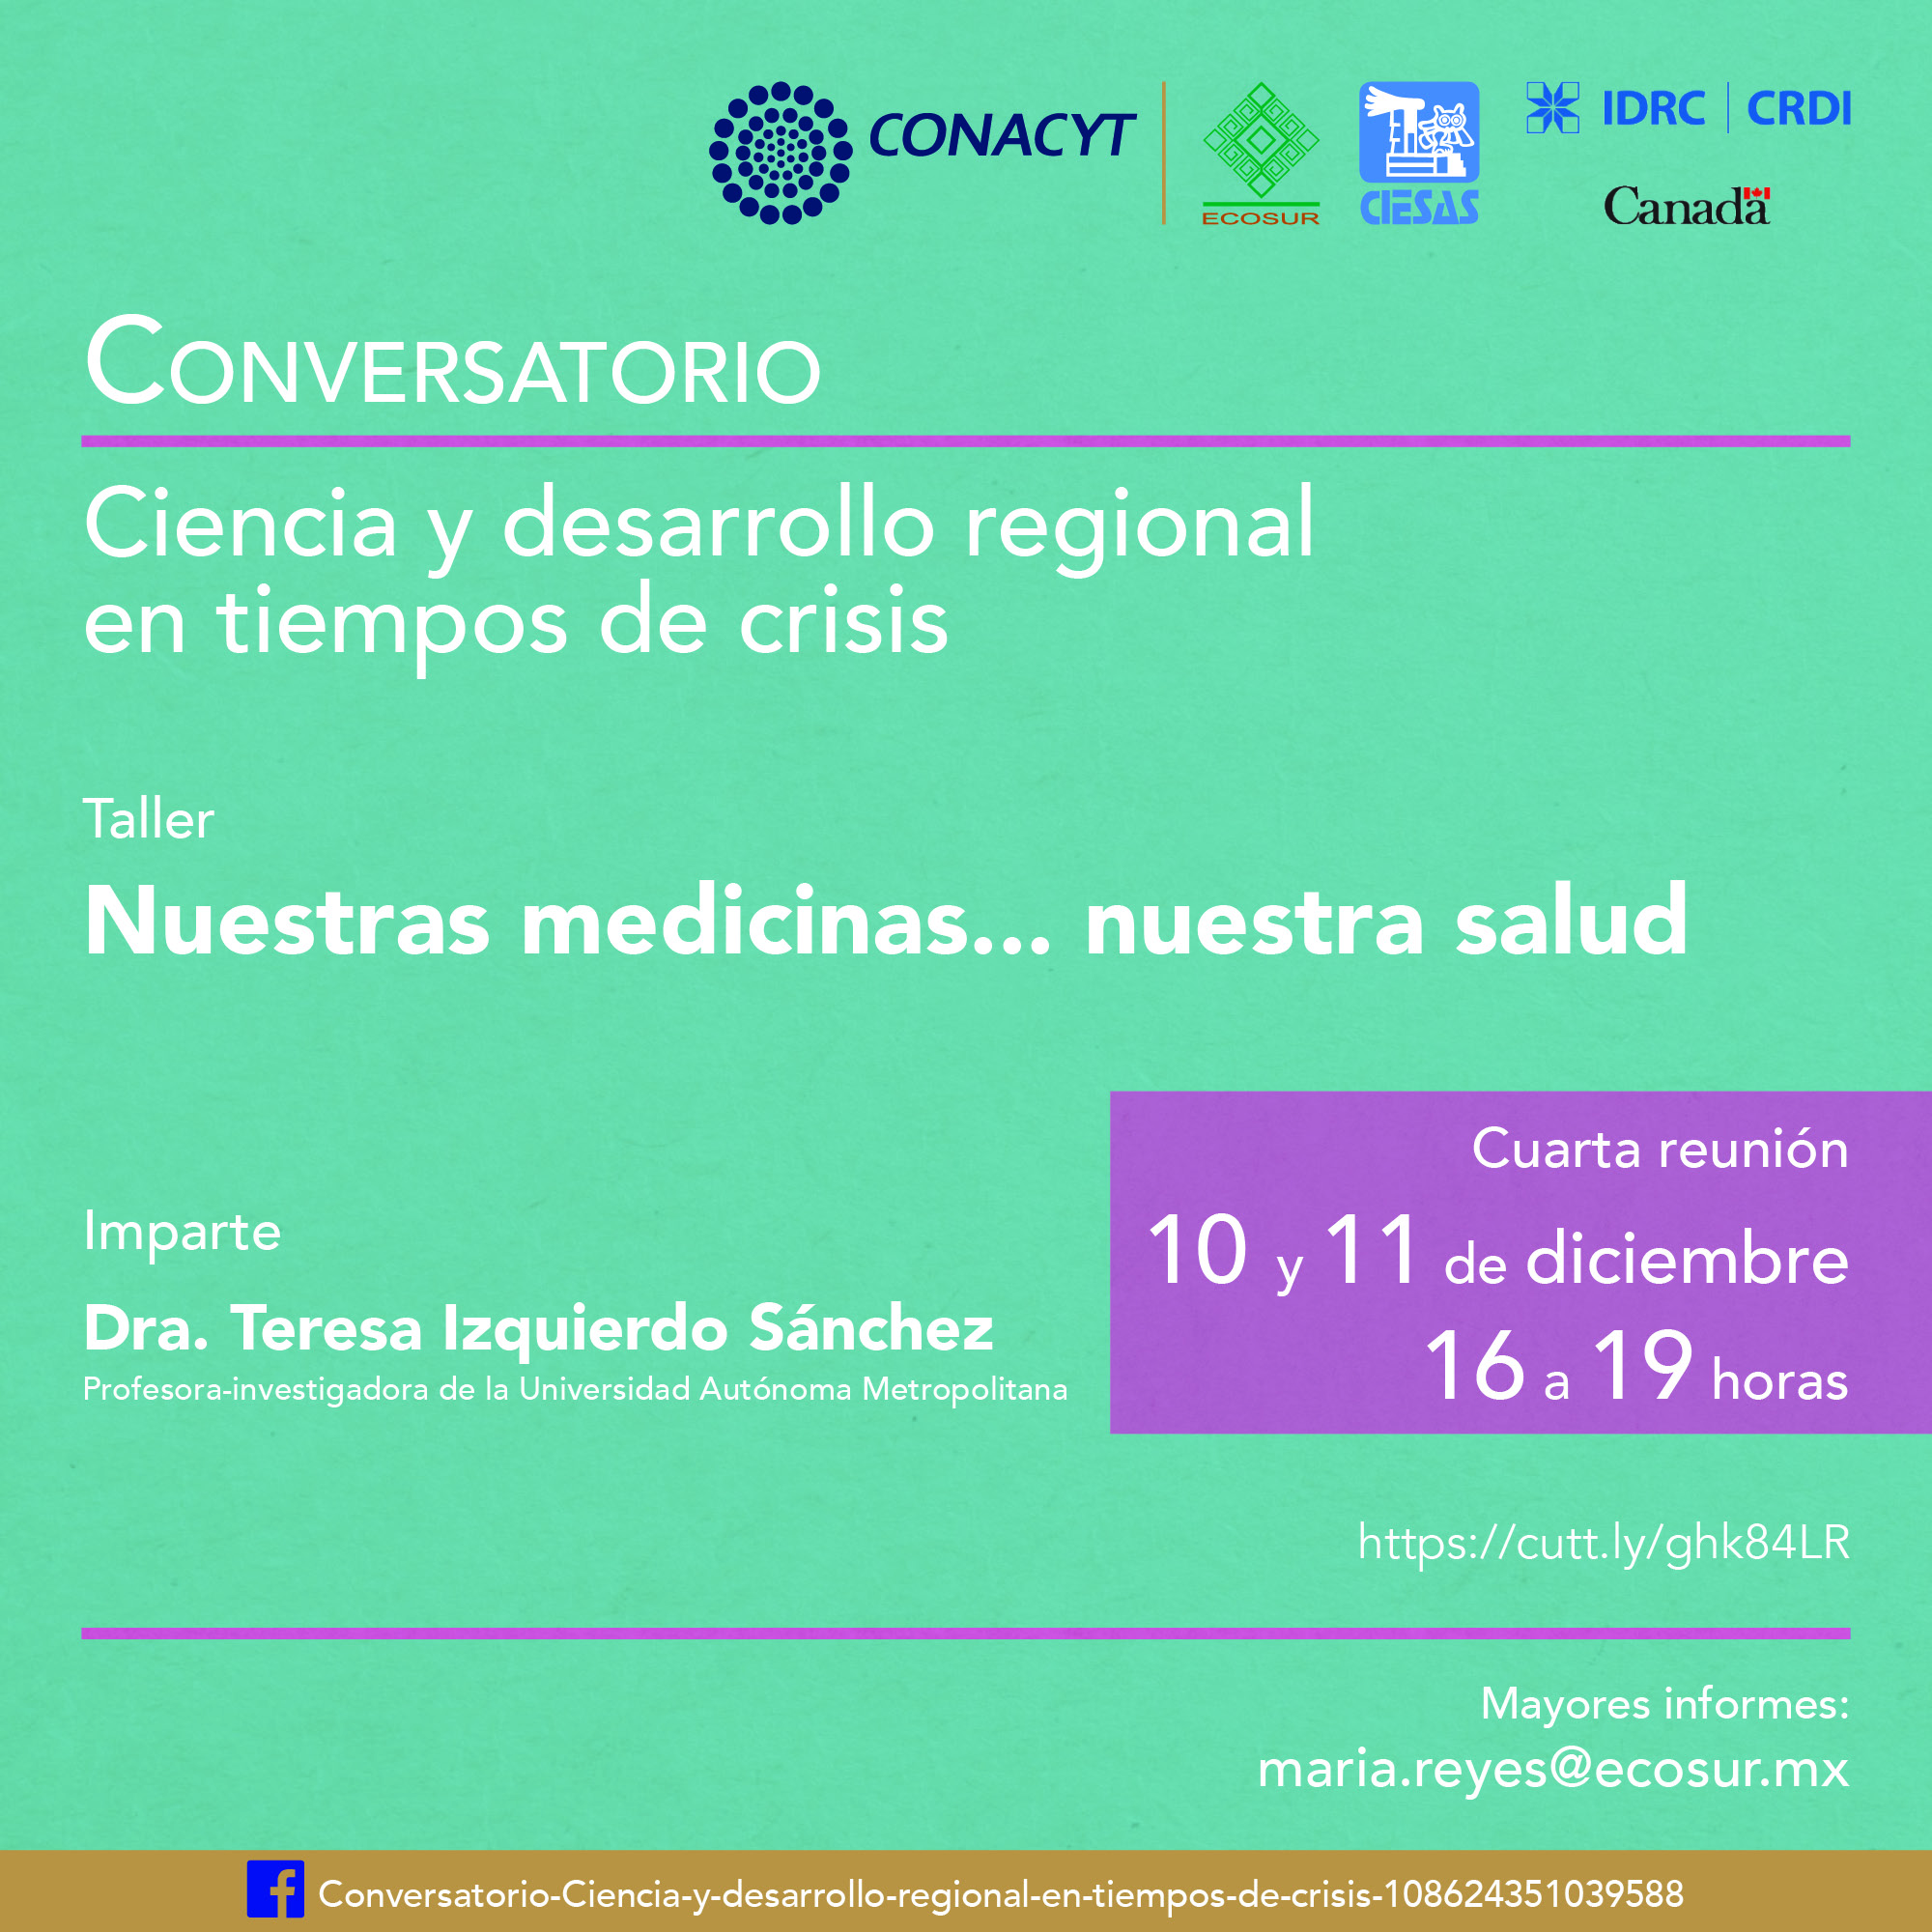 Conversatorio “Ciencia y desarrollo regional en tiempos de crisis”